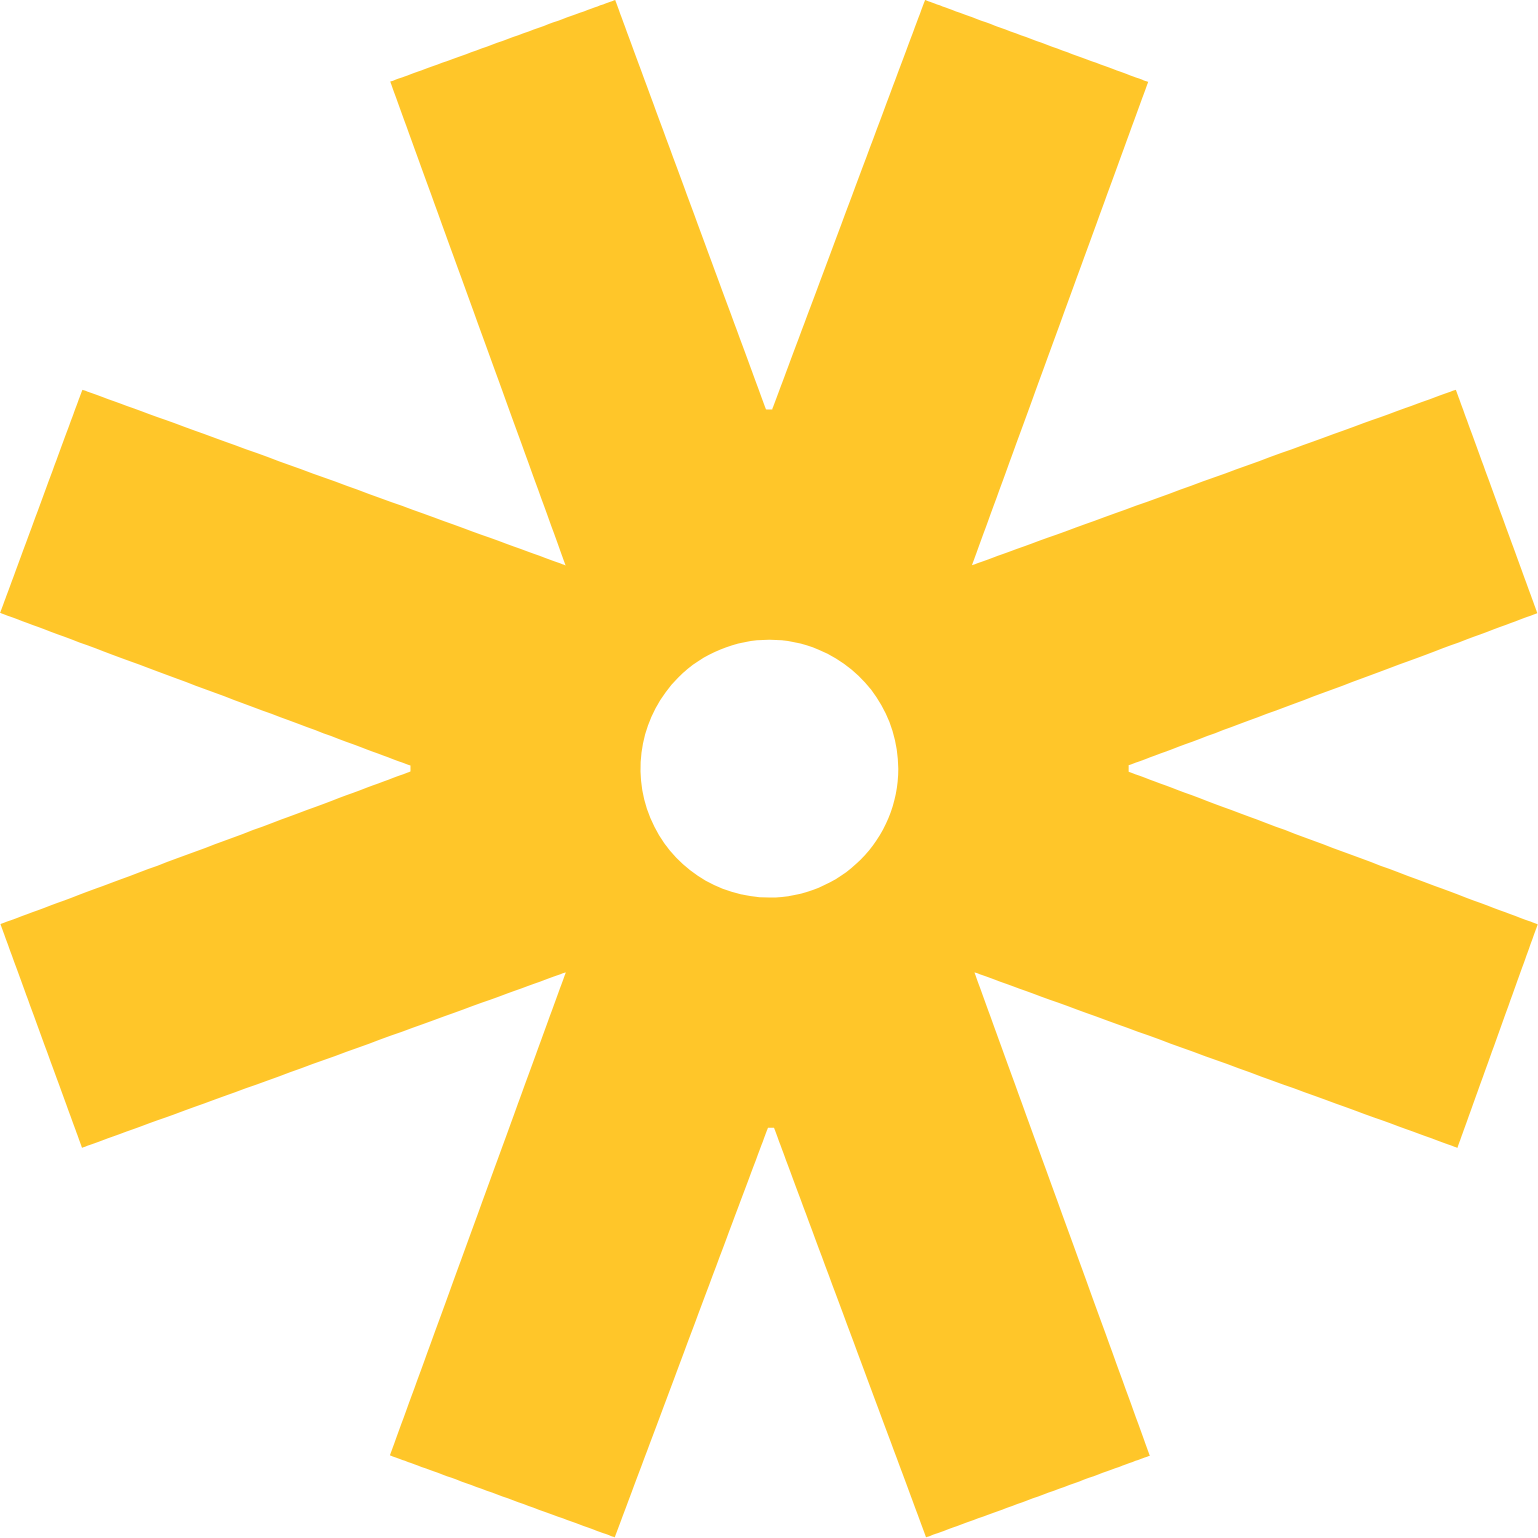 Vitru Logo (transparentes PNG)